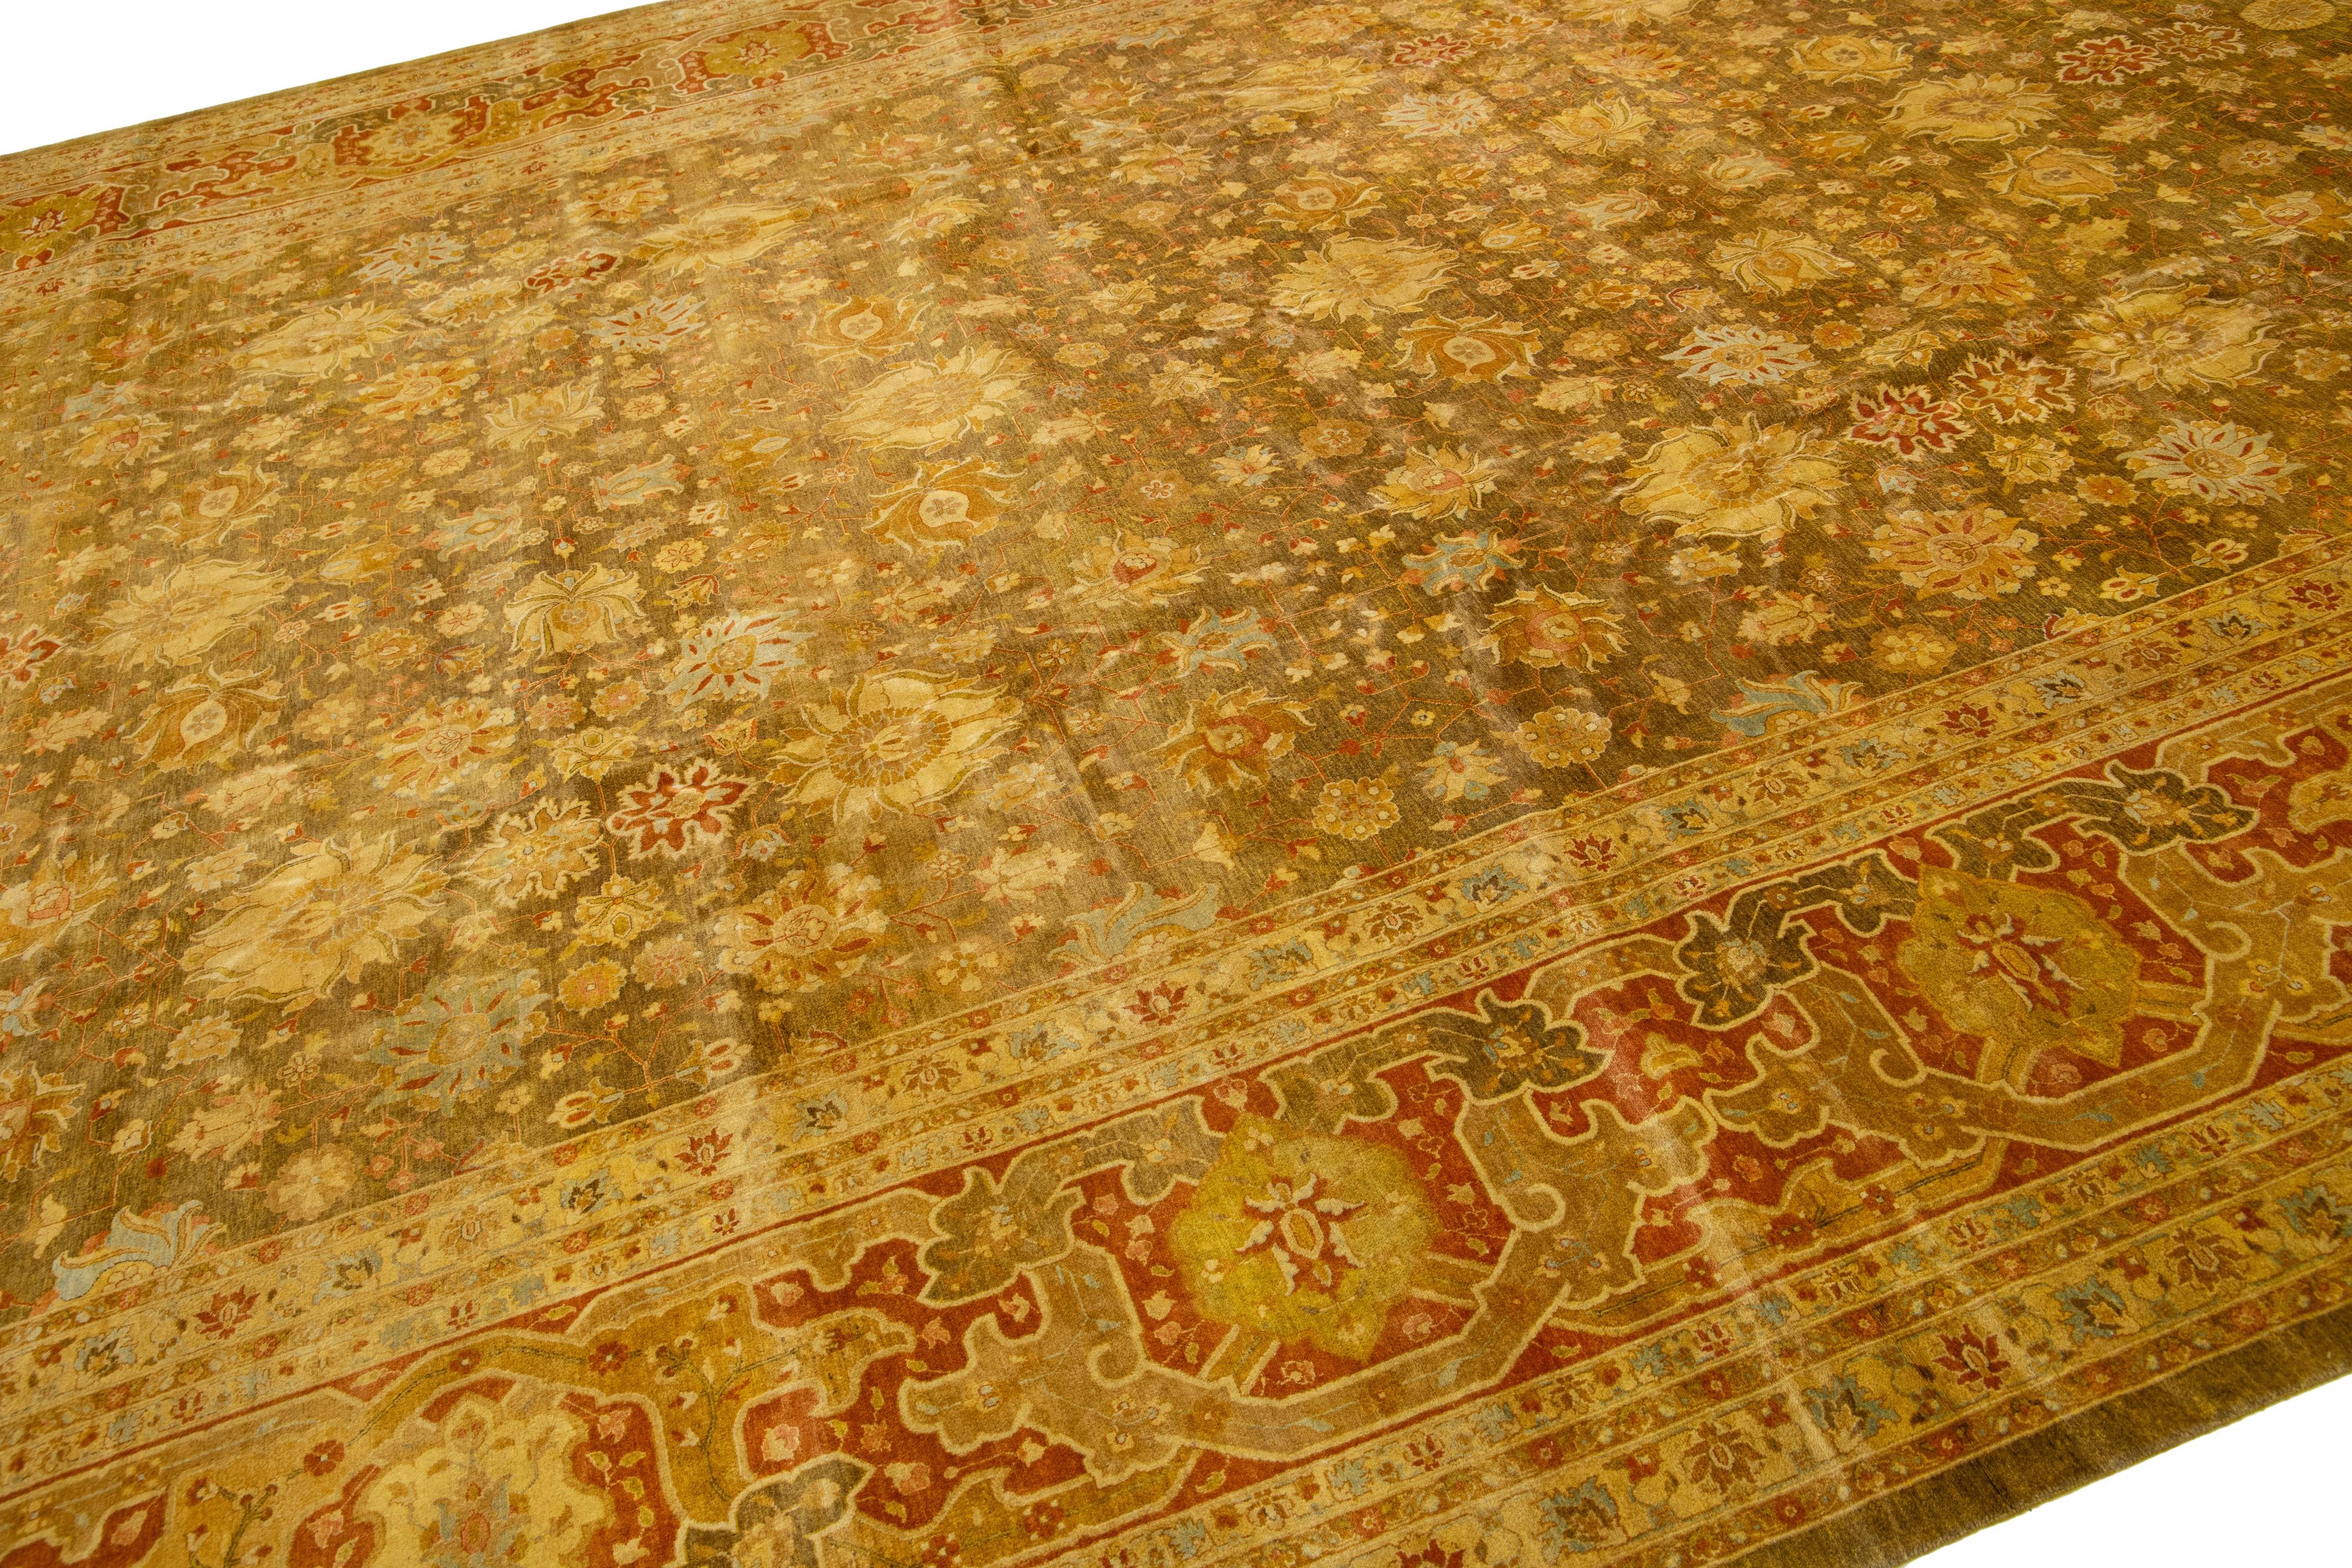 Der handgefertigte Wollteppich Tabriz Style präsentiert ein außergewöhnliches, traditionelles Blumenmuster. Der starke Kontrast zwischen dem hellbraunen Hintergrund und dem leuchtenden Grün und Gold verstärkt das Design.

Dieser Teppich misst 12'2